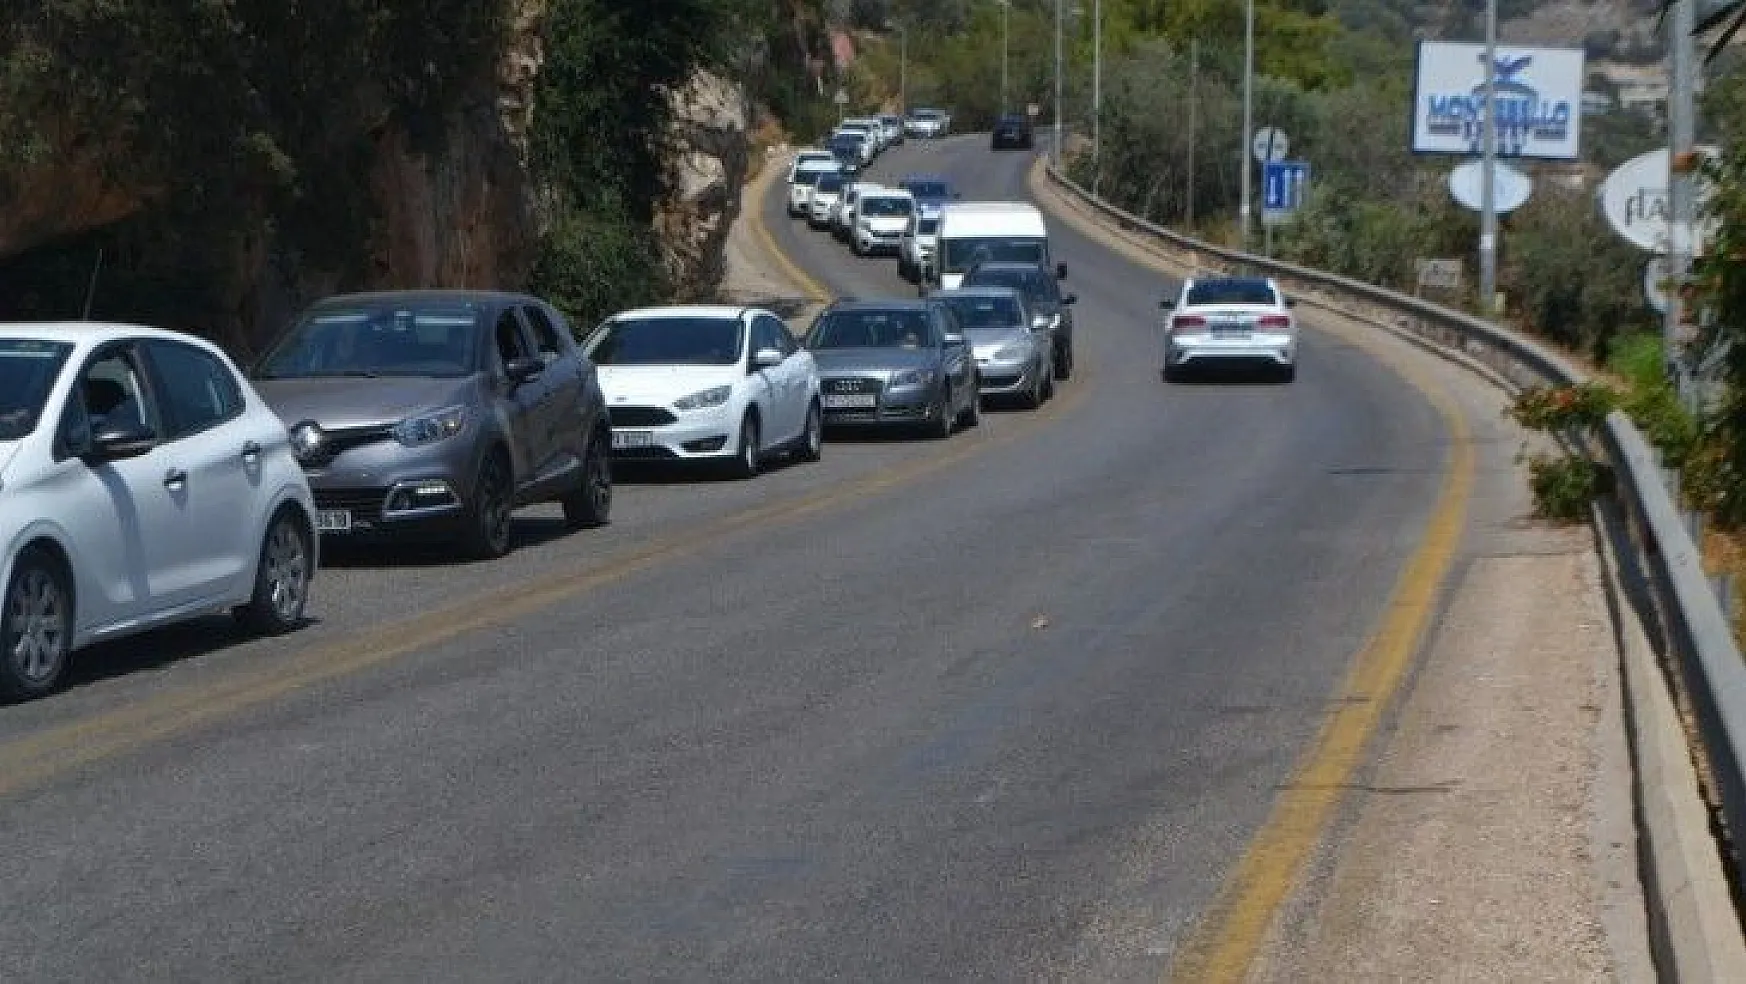 Ölüdeniz'in trafik sorununa profesyonel yardım bekleniyor